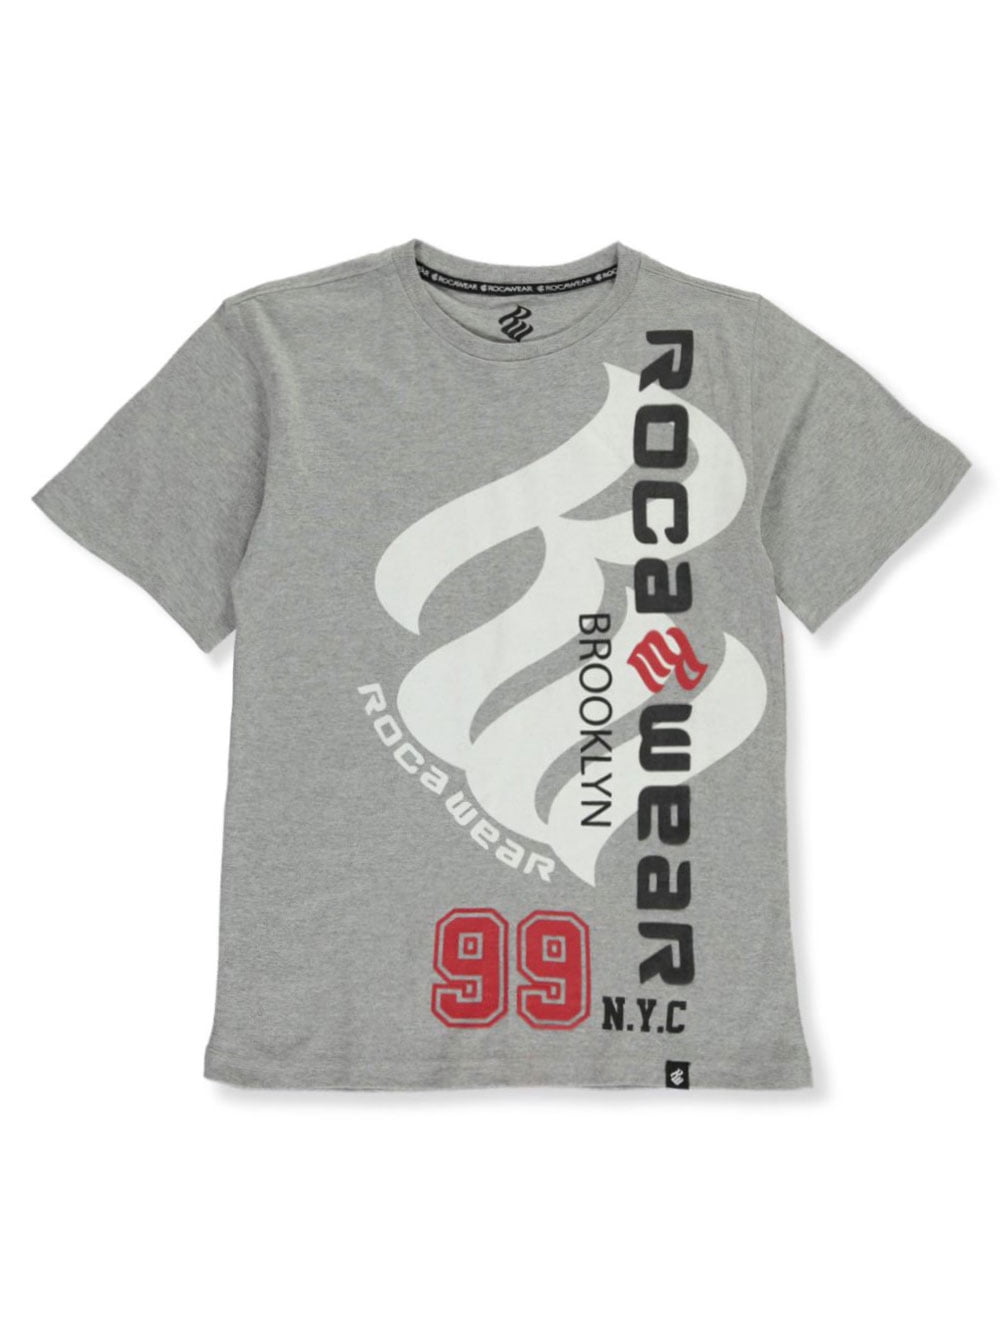 Rocawear - Rocawear Boys' Brooklyn 99 T-Shirt (Big Boys) - Walmart.com ...